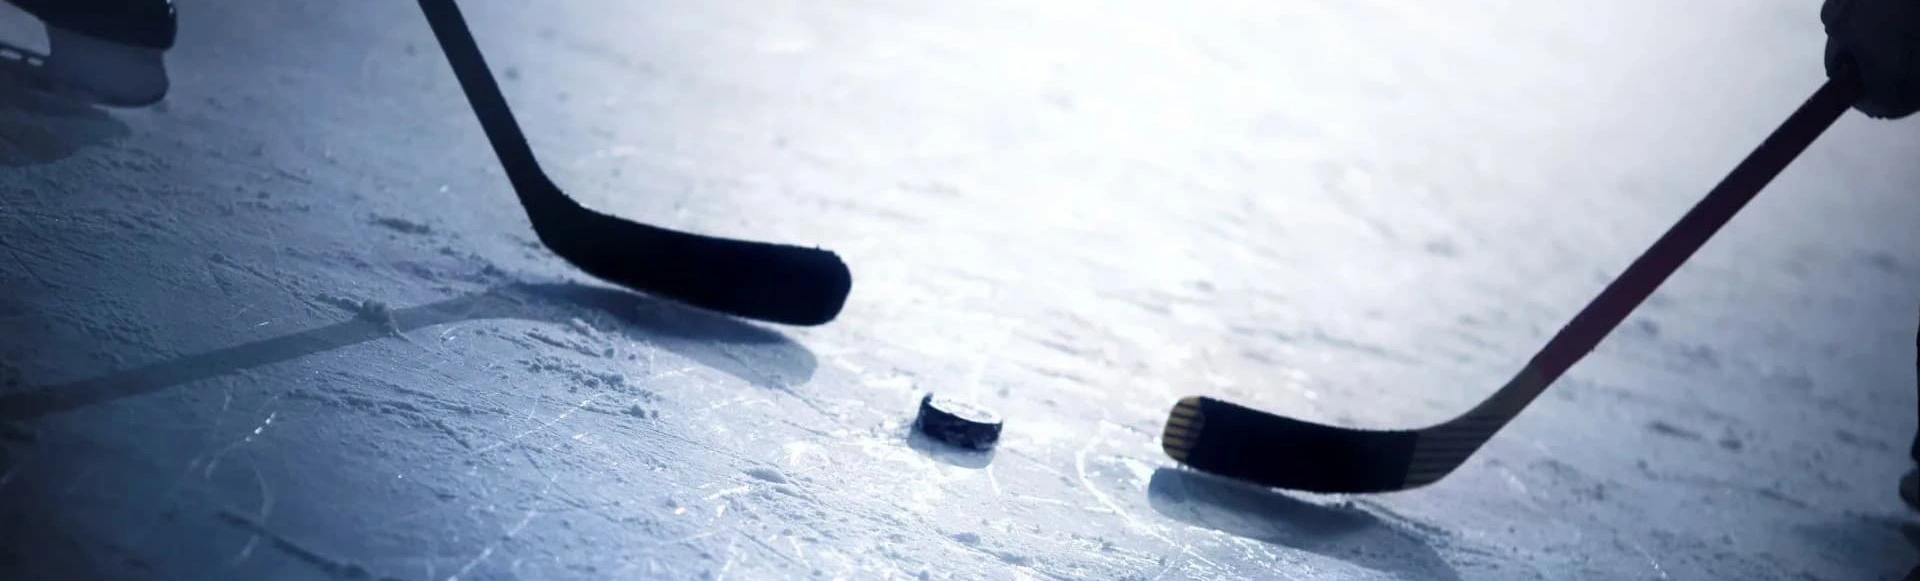 11 сентября в Санкт-Петербурге, на льду СК "Юбилейный", состоится захватывающий матч между командами "Динамо СПб" и "АКМ" в рамках Всероссийской хоккейной лиги.